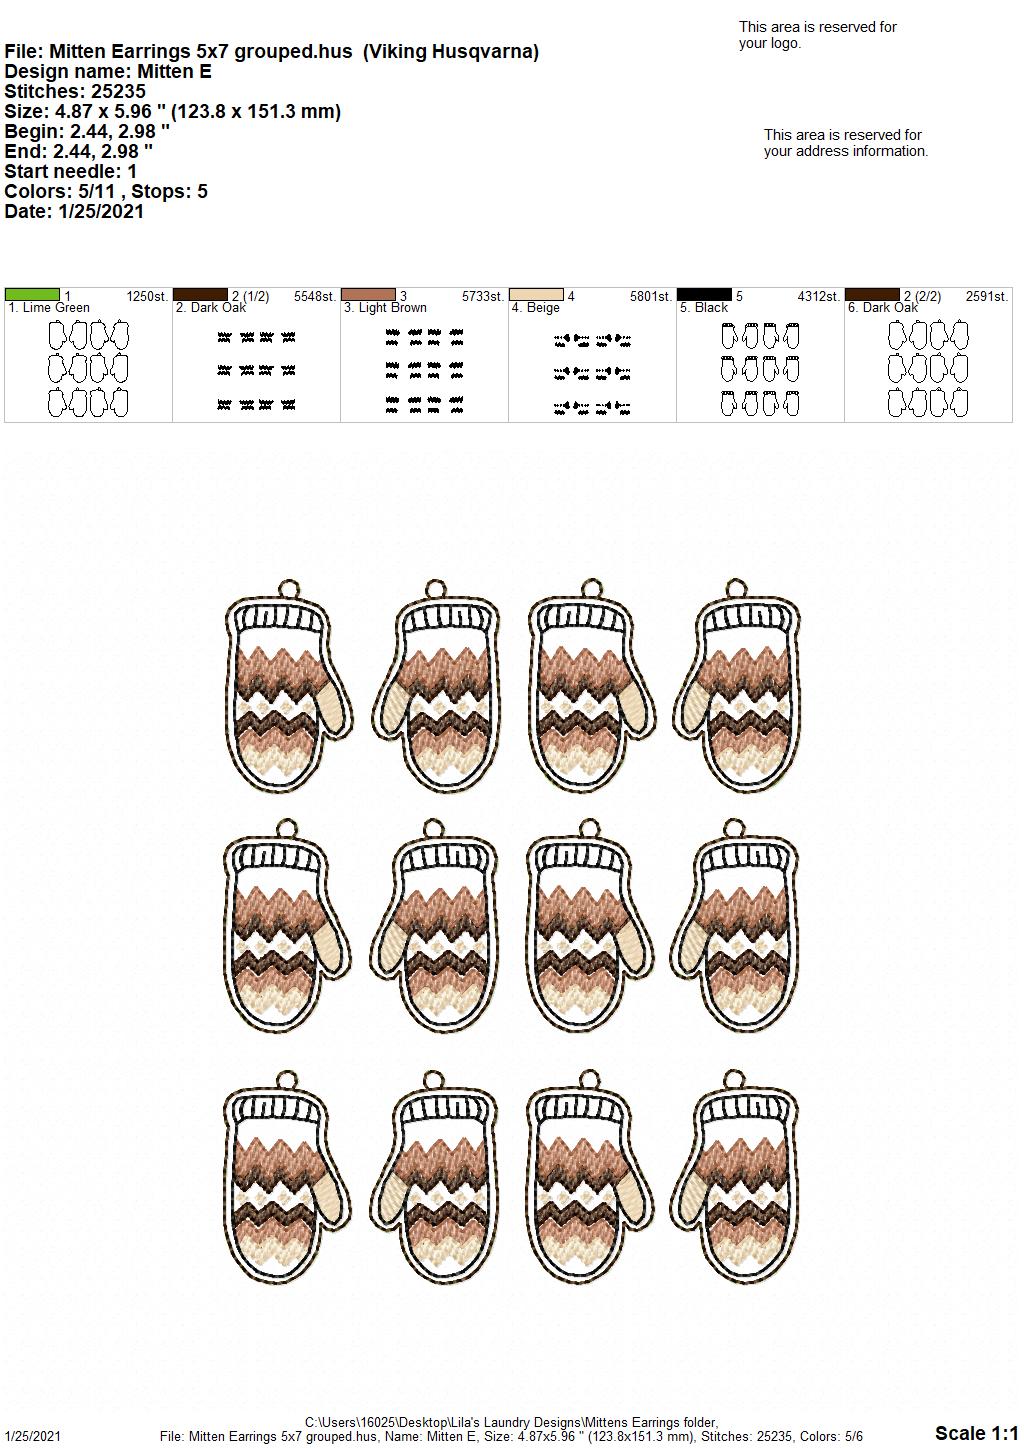 Mitten Earrings - 1 Size - Digital Embroidery Design